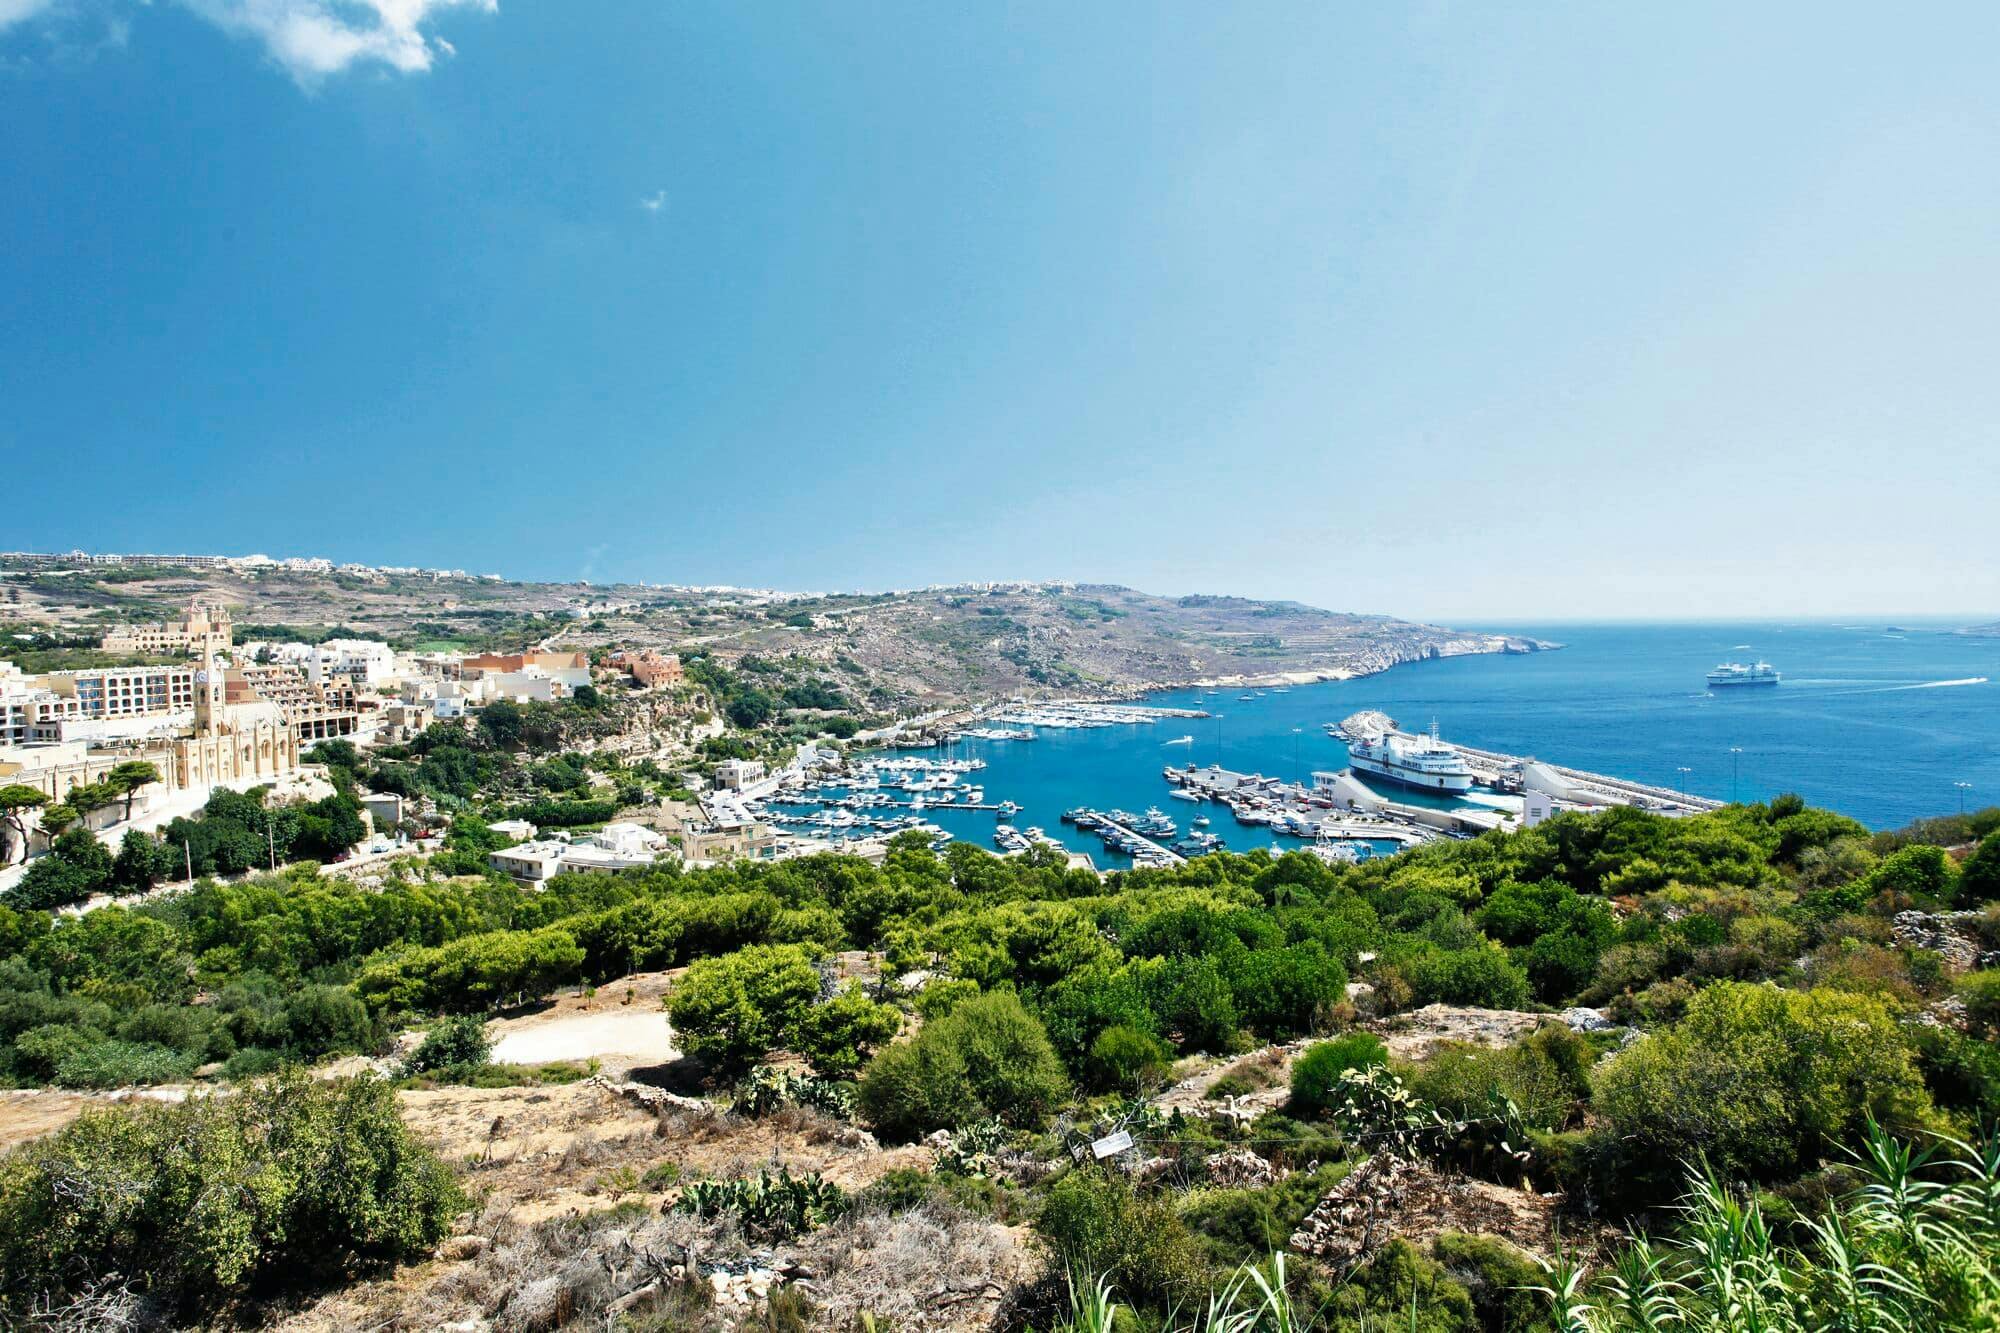 Gozo Island Tour with Victoria Citadel